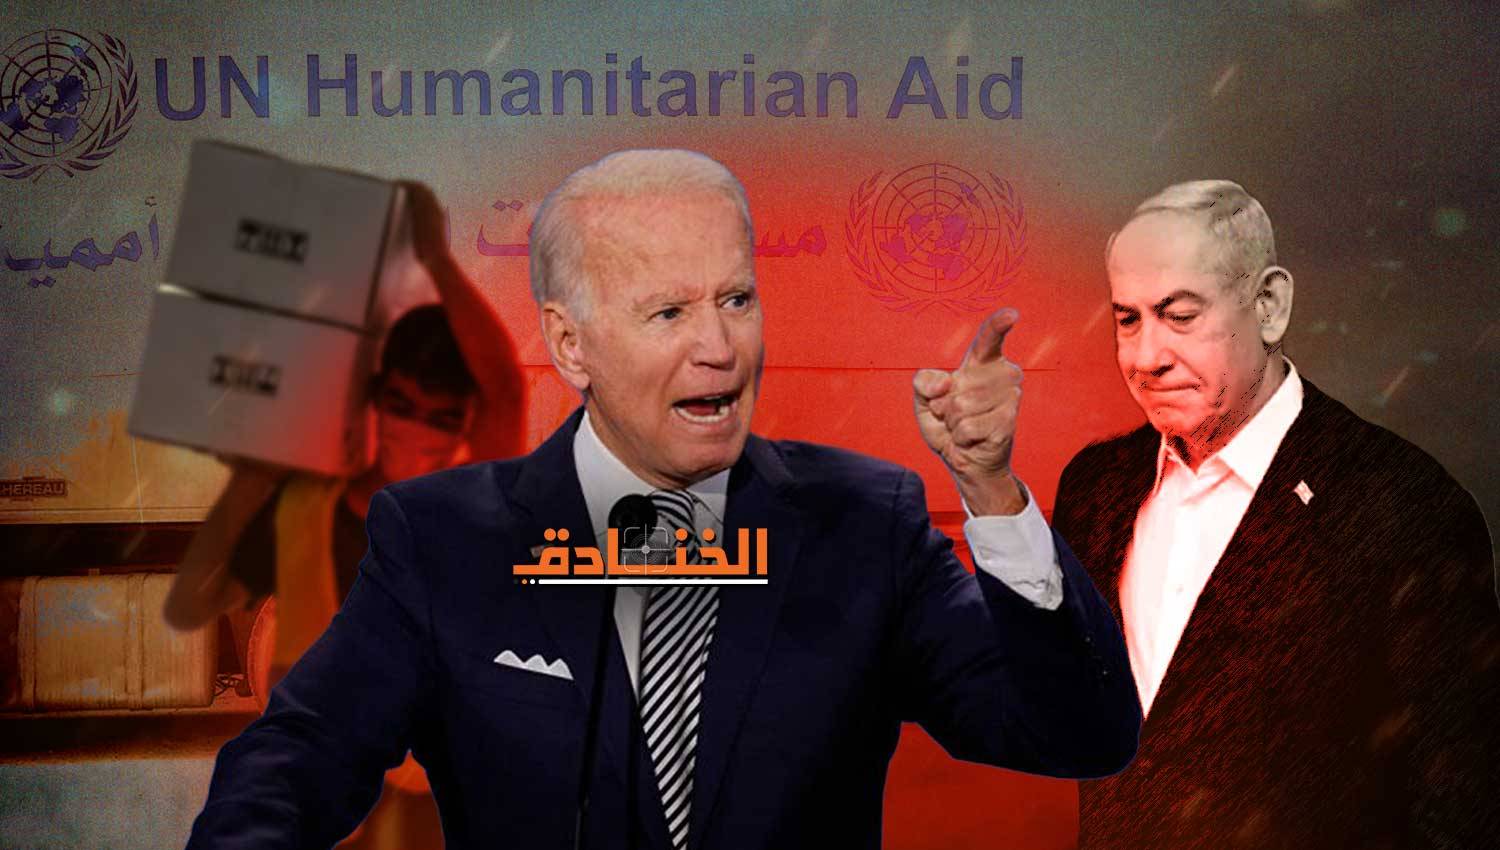 ما الذي دفع نتنياهو إلى تعديل موقفه بشأن المساعدات الإنسانية؟